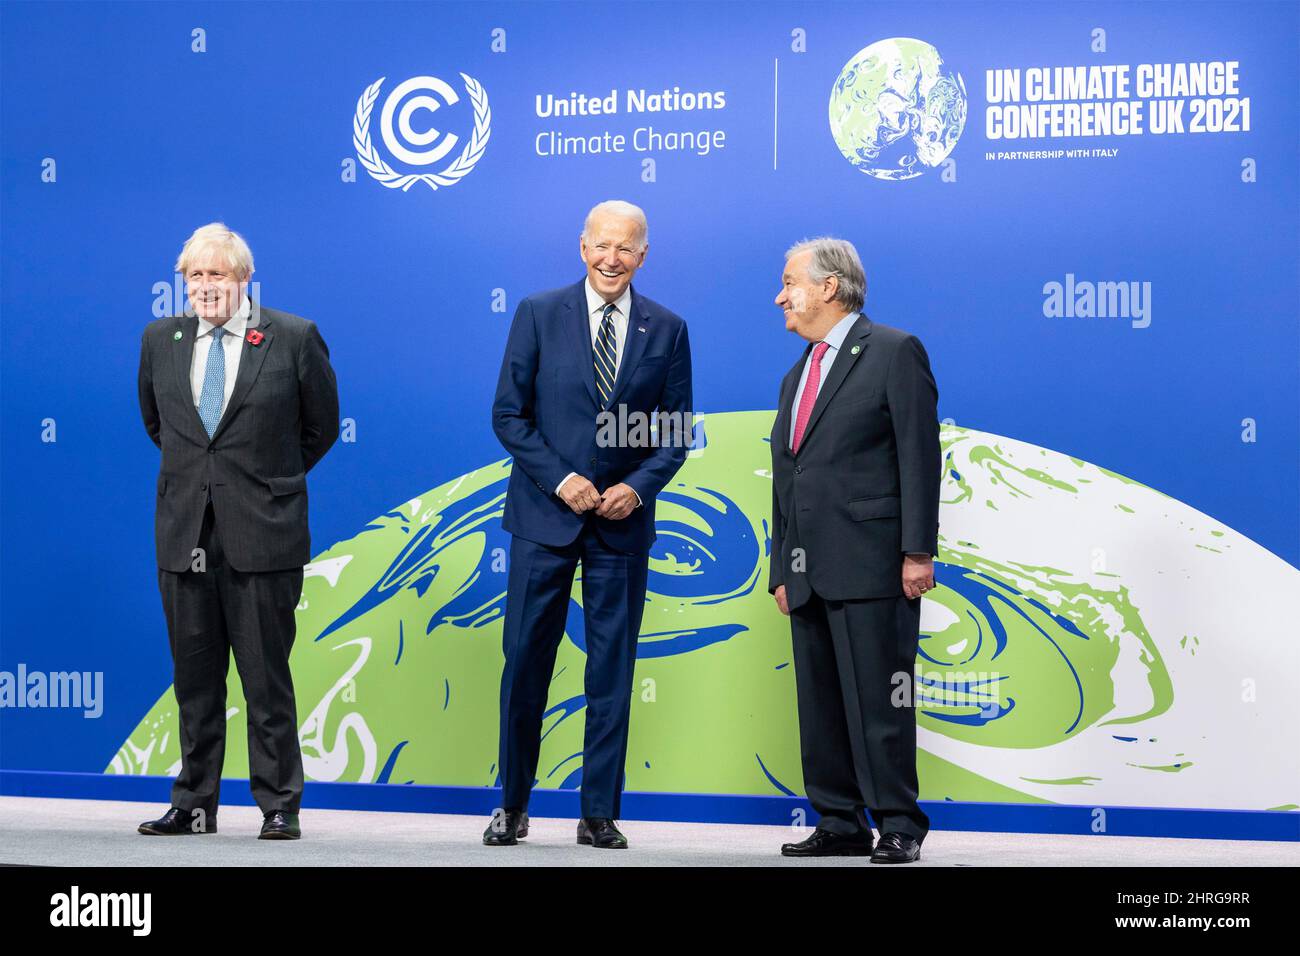 Le Président des États-Unis Joe Biden pose pour des photos avec le Premier ministre britannique Boris Johnson, à gauche, et le Secrétaire général des Nations Unies Antonio Guterres, lors de la Conférence des Nations Unies sur les changements climatiques COP26 au campus écossais de l'événement, le 1 novembre 2021 à Glasgow, en Écosse. Banque D'Images